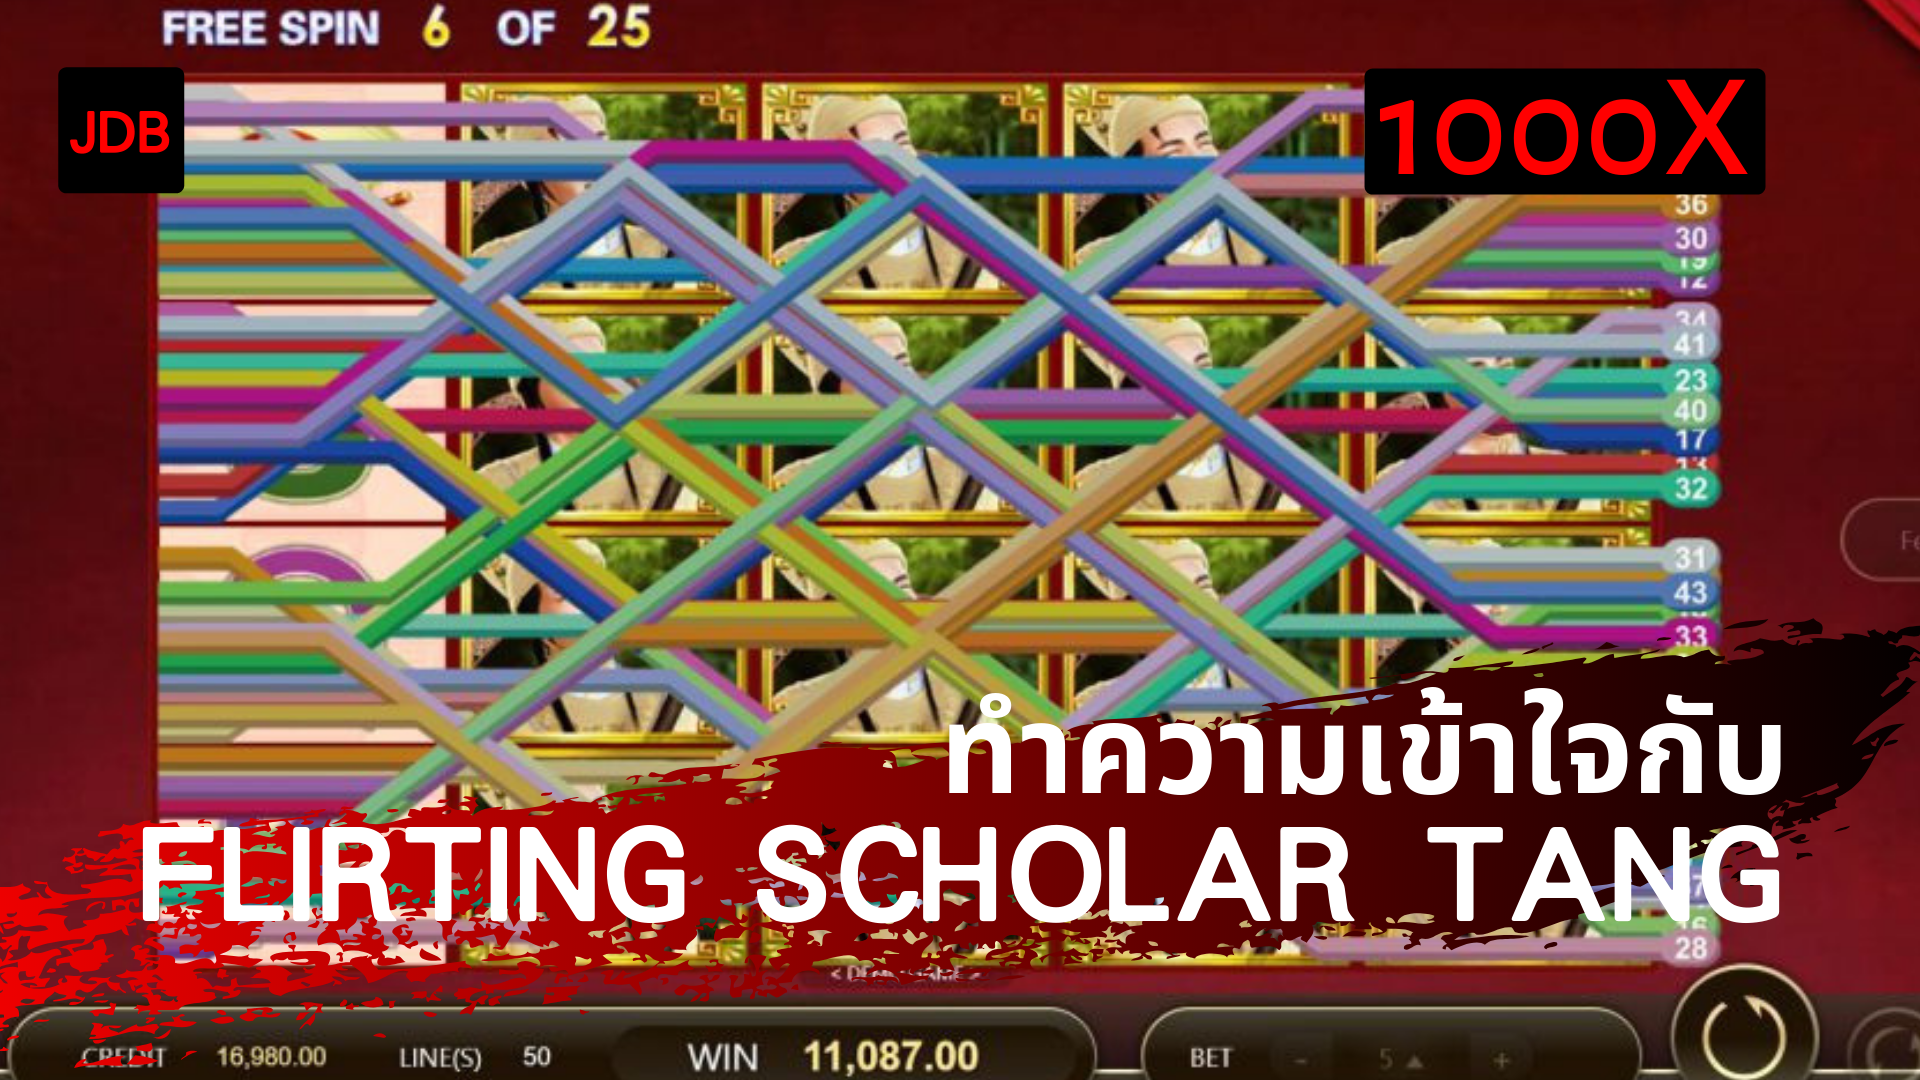 【JDB Flirting Scholar Tang】คอลัมน์เกมเดย์ Pay69 slotgame เกมสล็อต 5